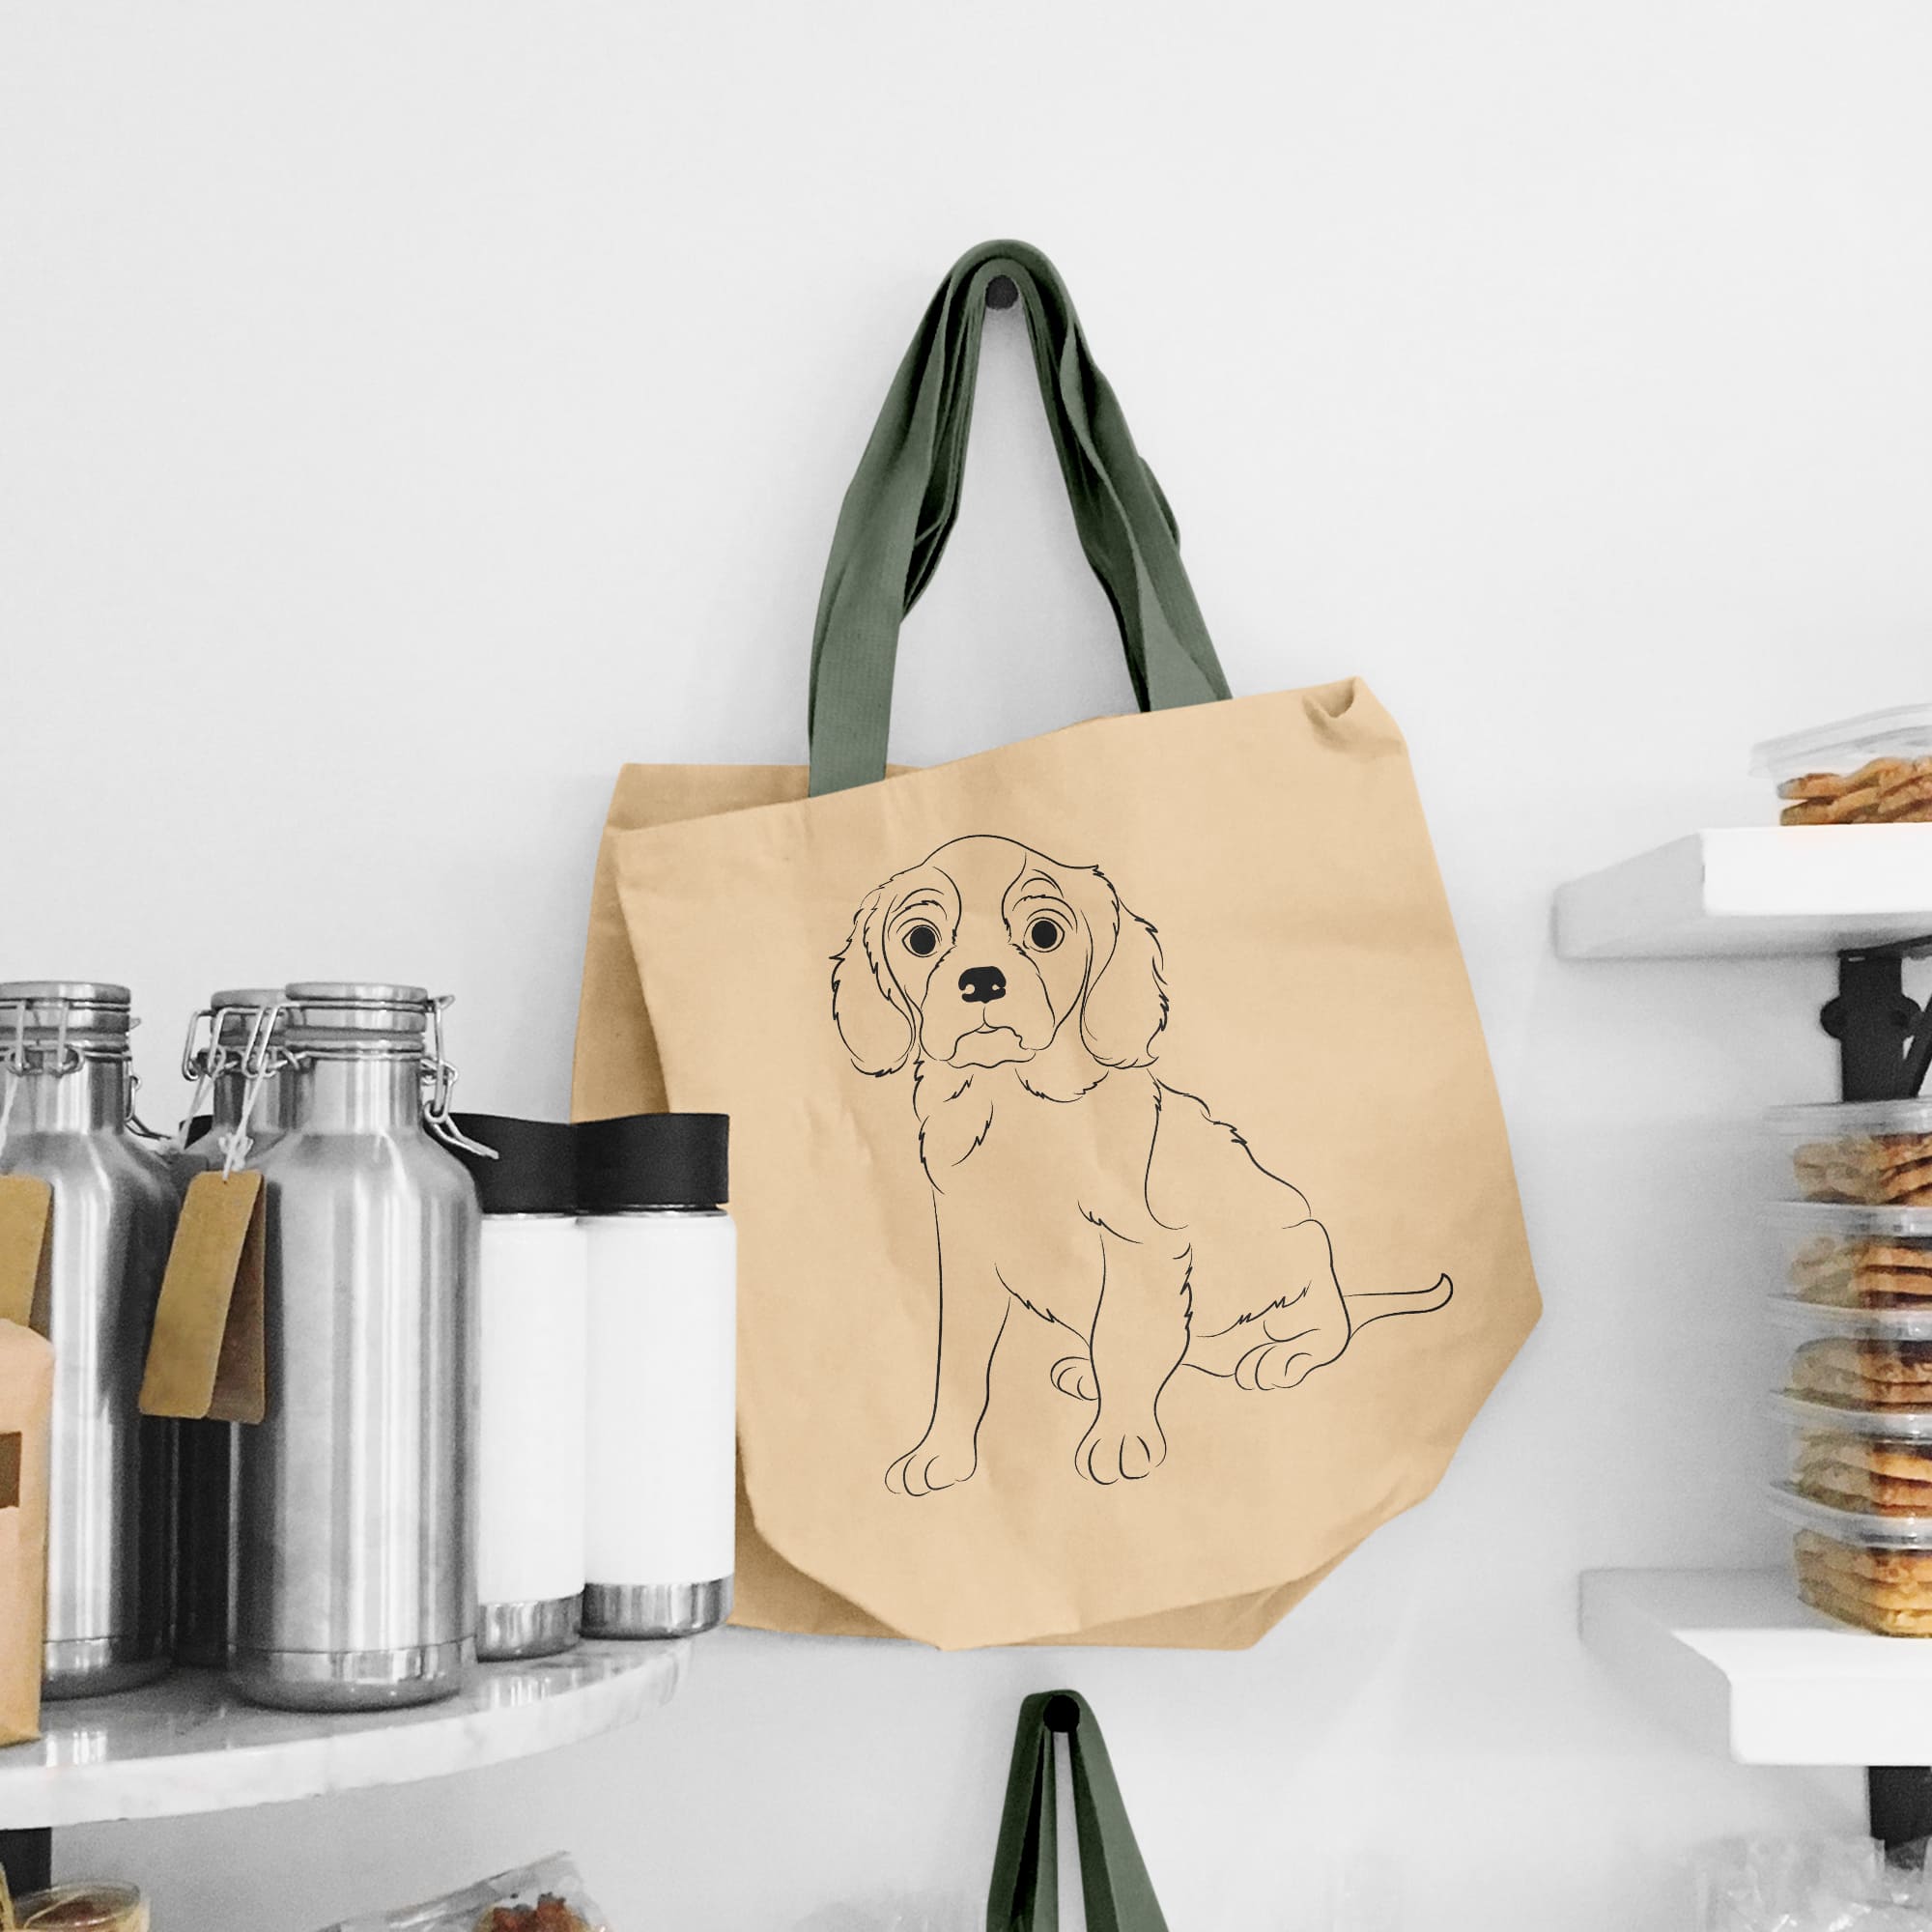 Dog is drawn on a bag on a shelf.